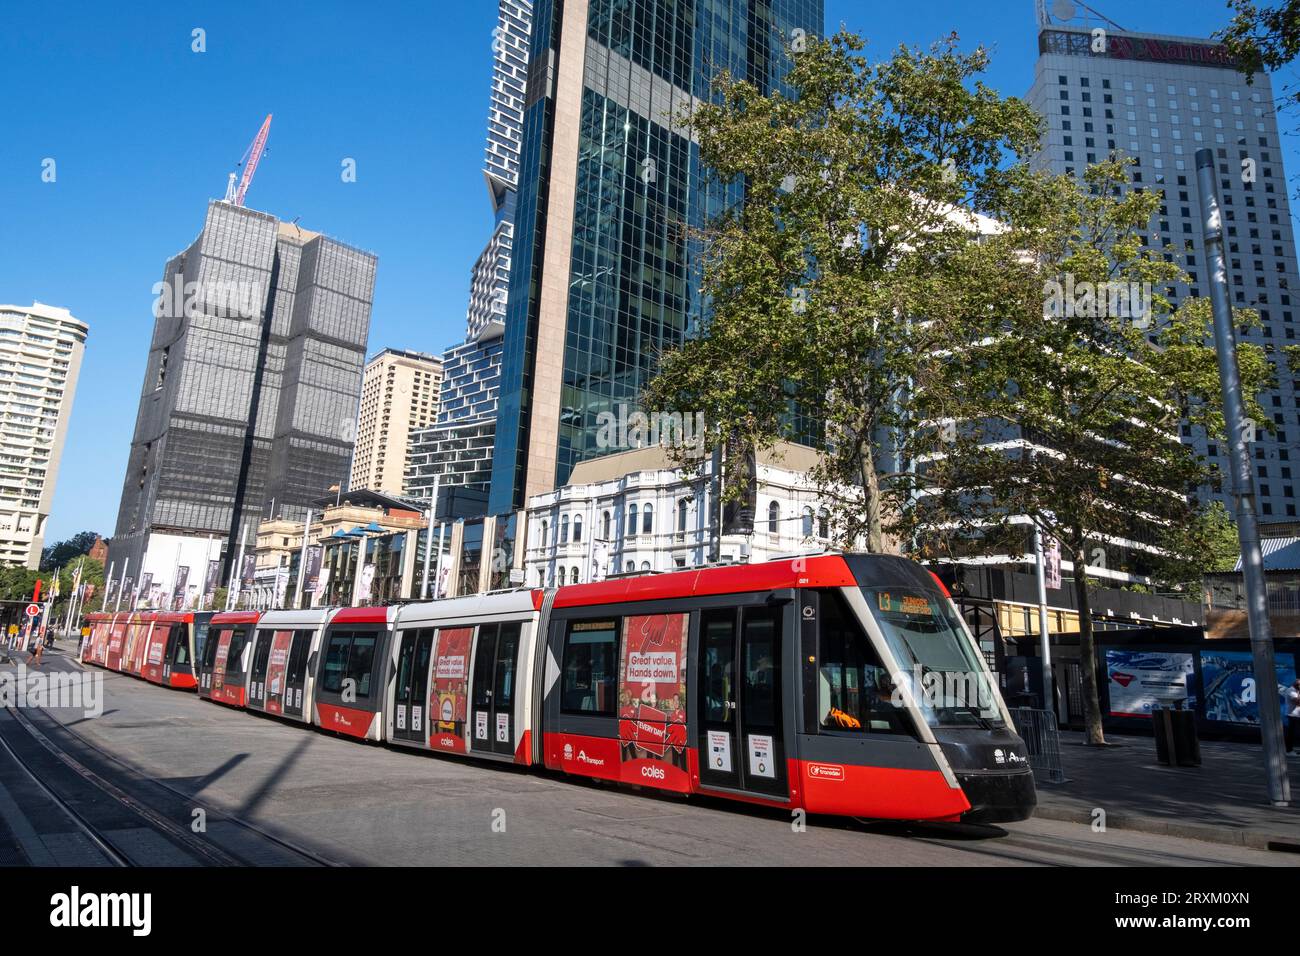 Tramway léger sur rail à la station Circular Quay, Sydney New South Wales, Australie. Banque D'Images